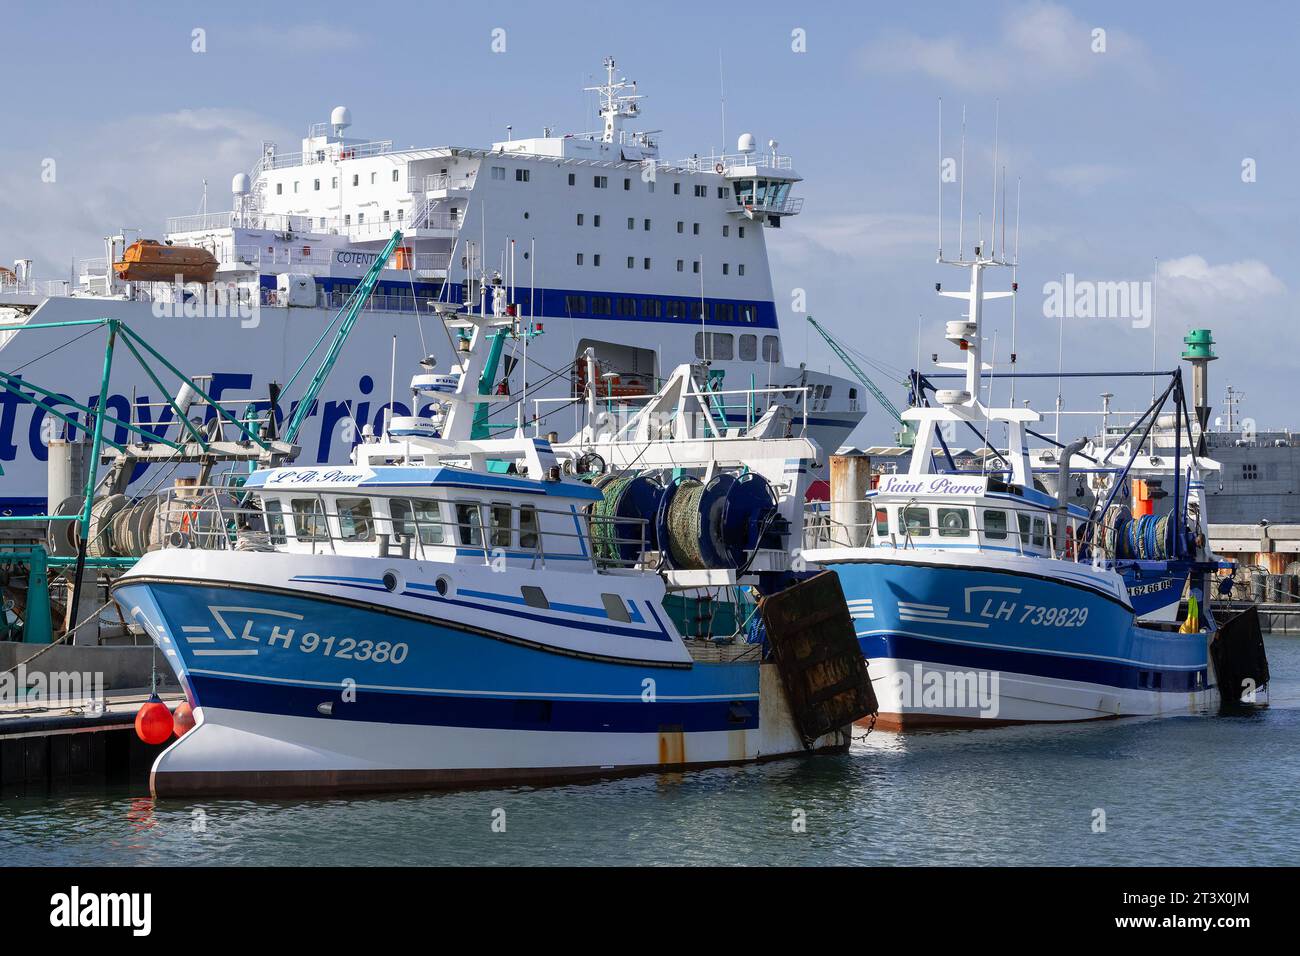 Le Havre, France - navires de pêche aux côtés au port de pêche du Havre. Banque D'Images